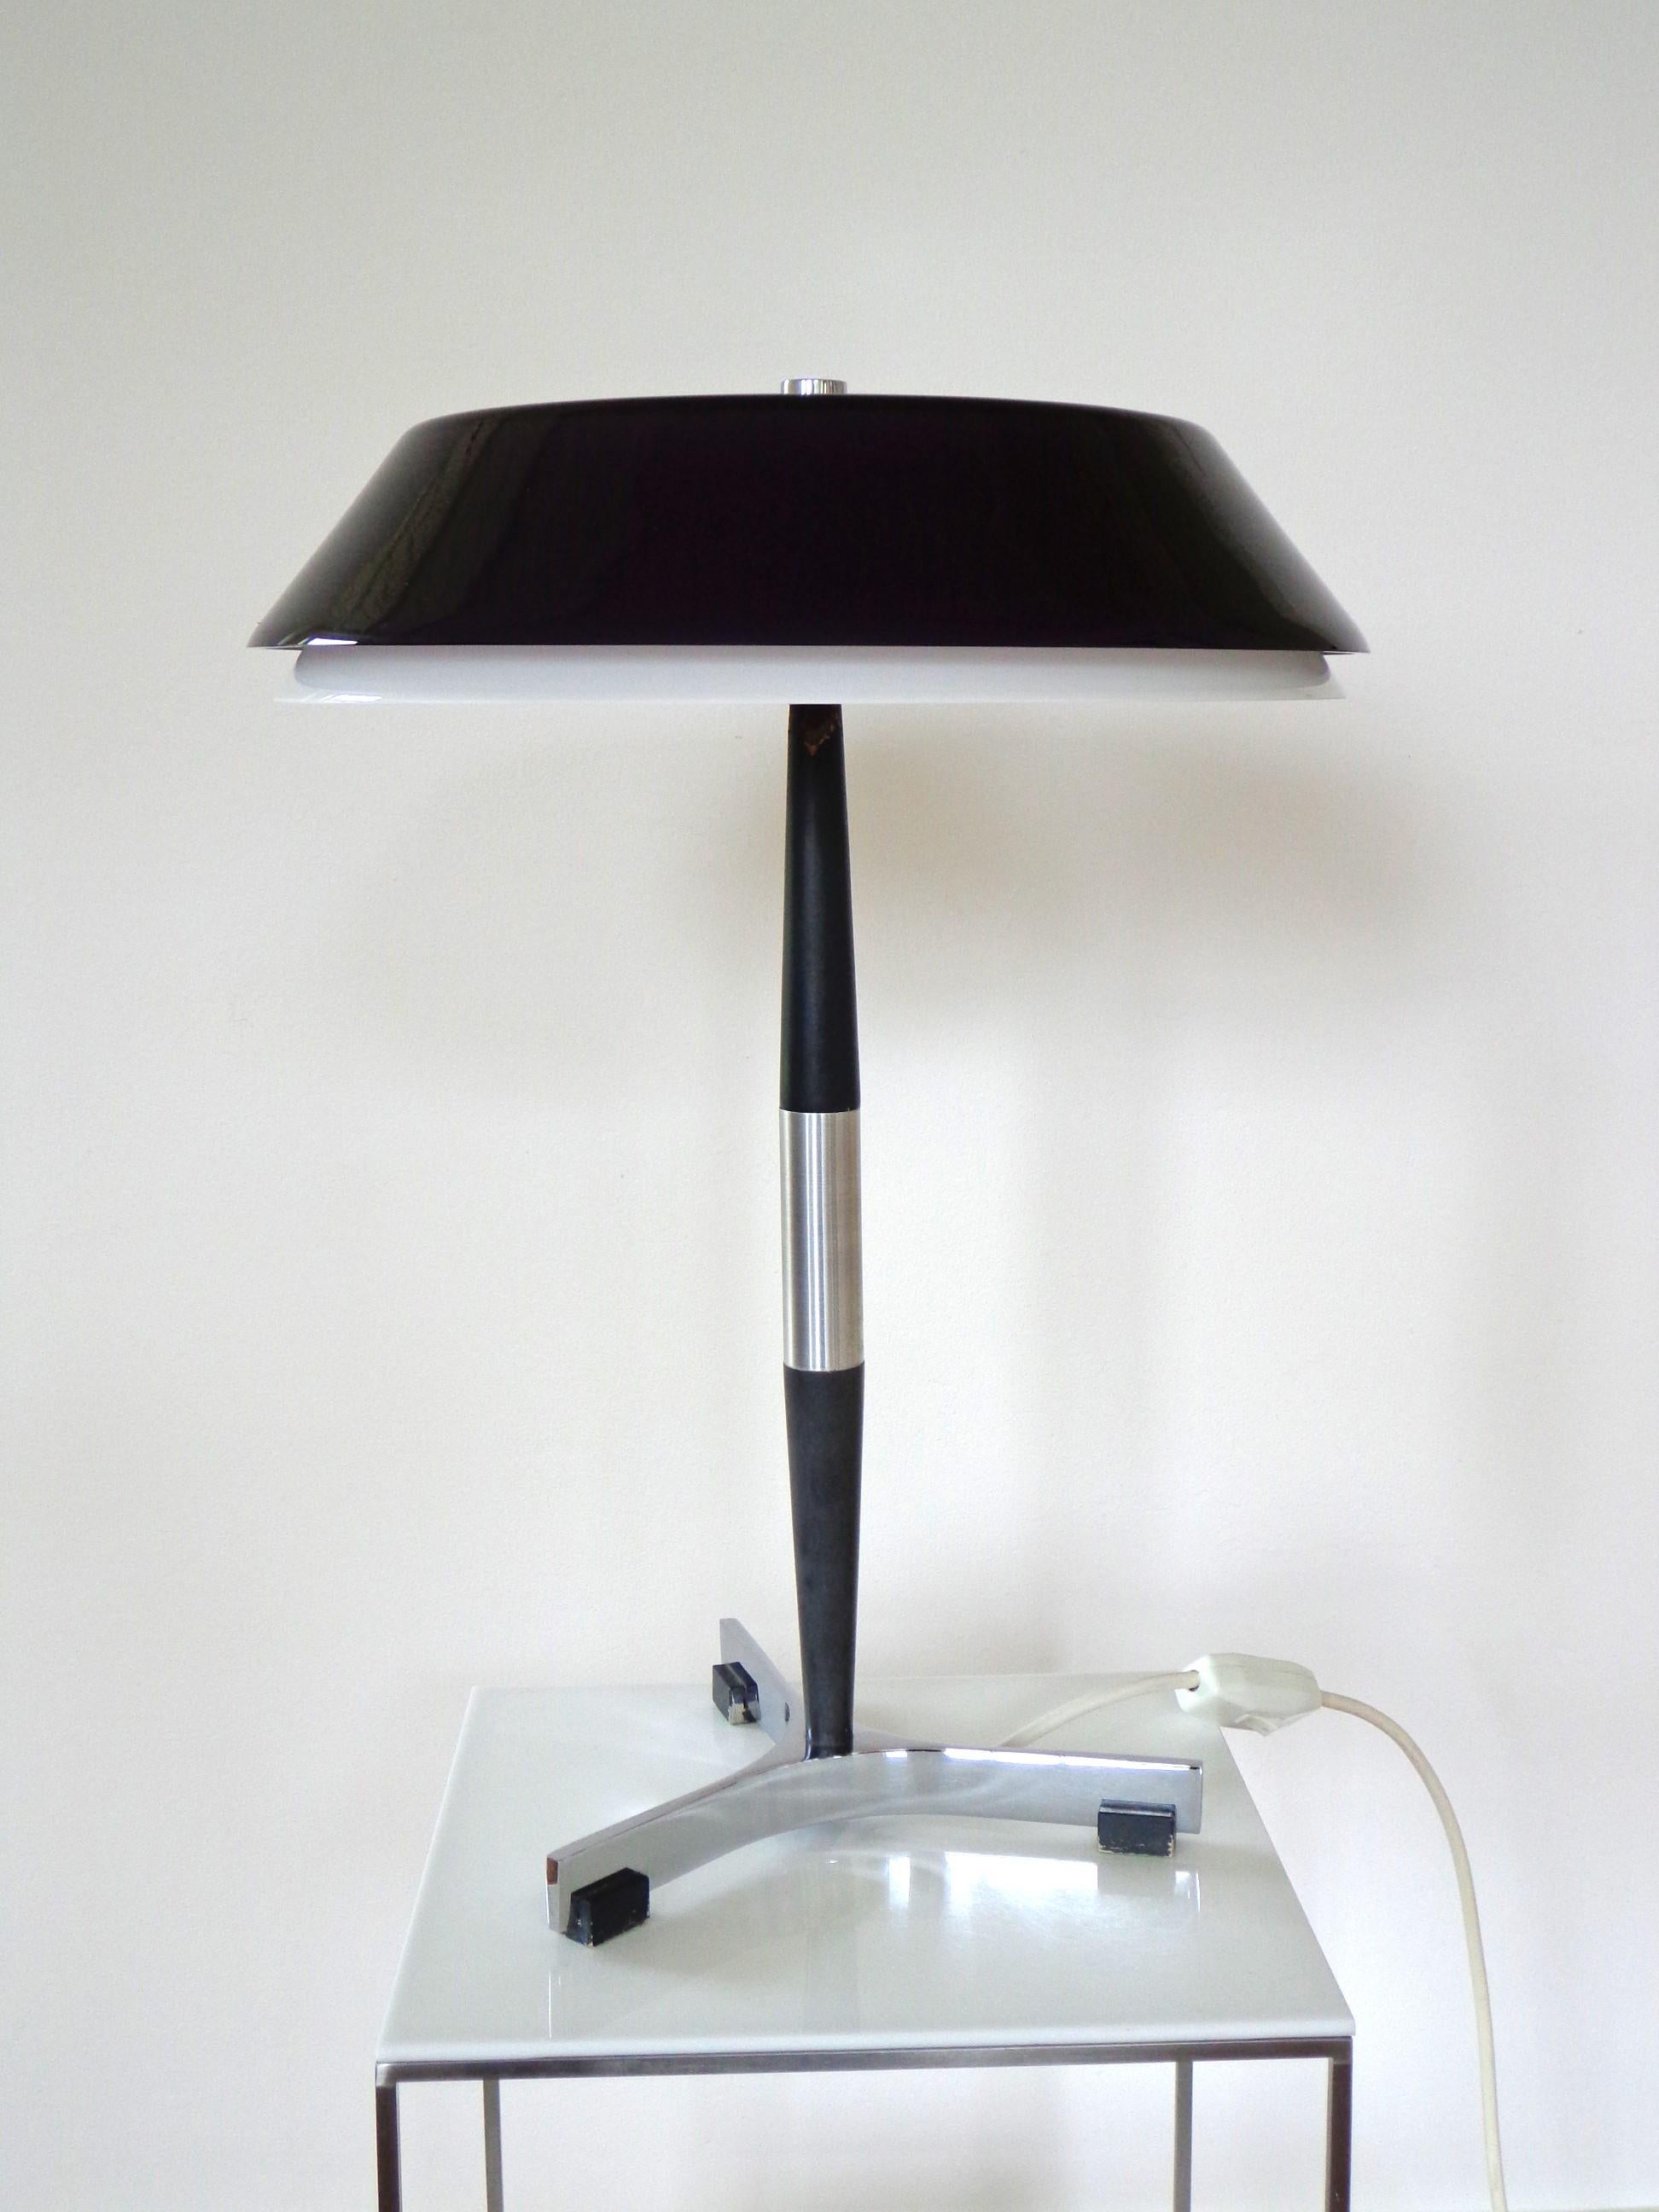 Rare lampe de table modèle Senior conçue par Jo Hammerborg. Produit par Fog & Mørup au Danemark.
Aluminium satiné, base laquée noire et chromée, abat-jour en verre lilla à l'extérieur, intérieur blanc opale. Cette lampe de table est dotée de deux